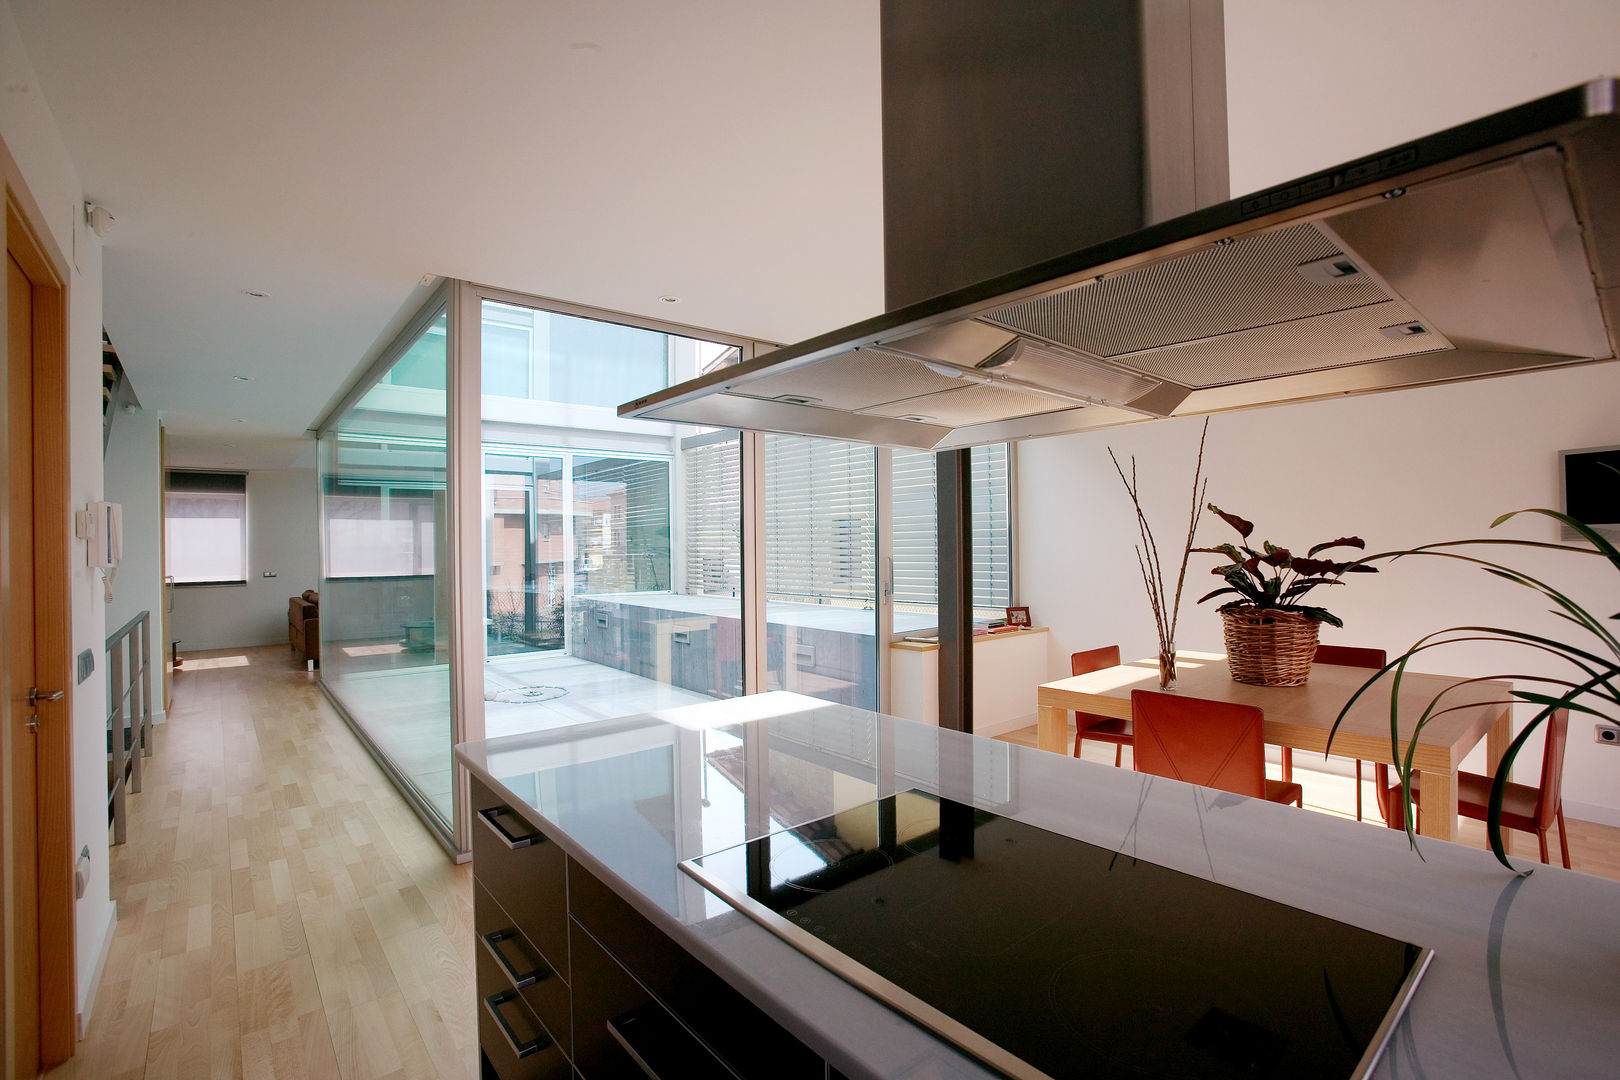 Vista interior cocina Comas-Pont Arquitectes slp Cocinas de estilo moderno